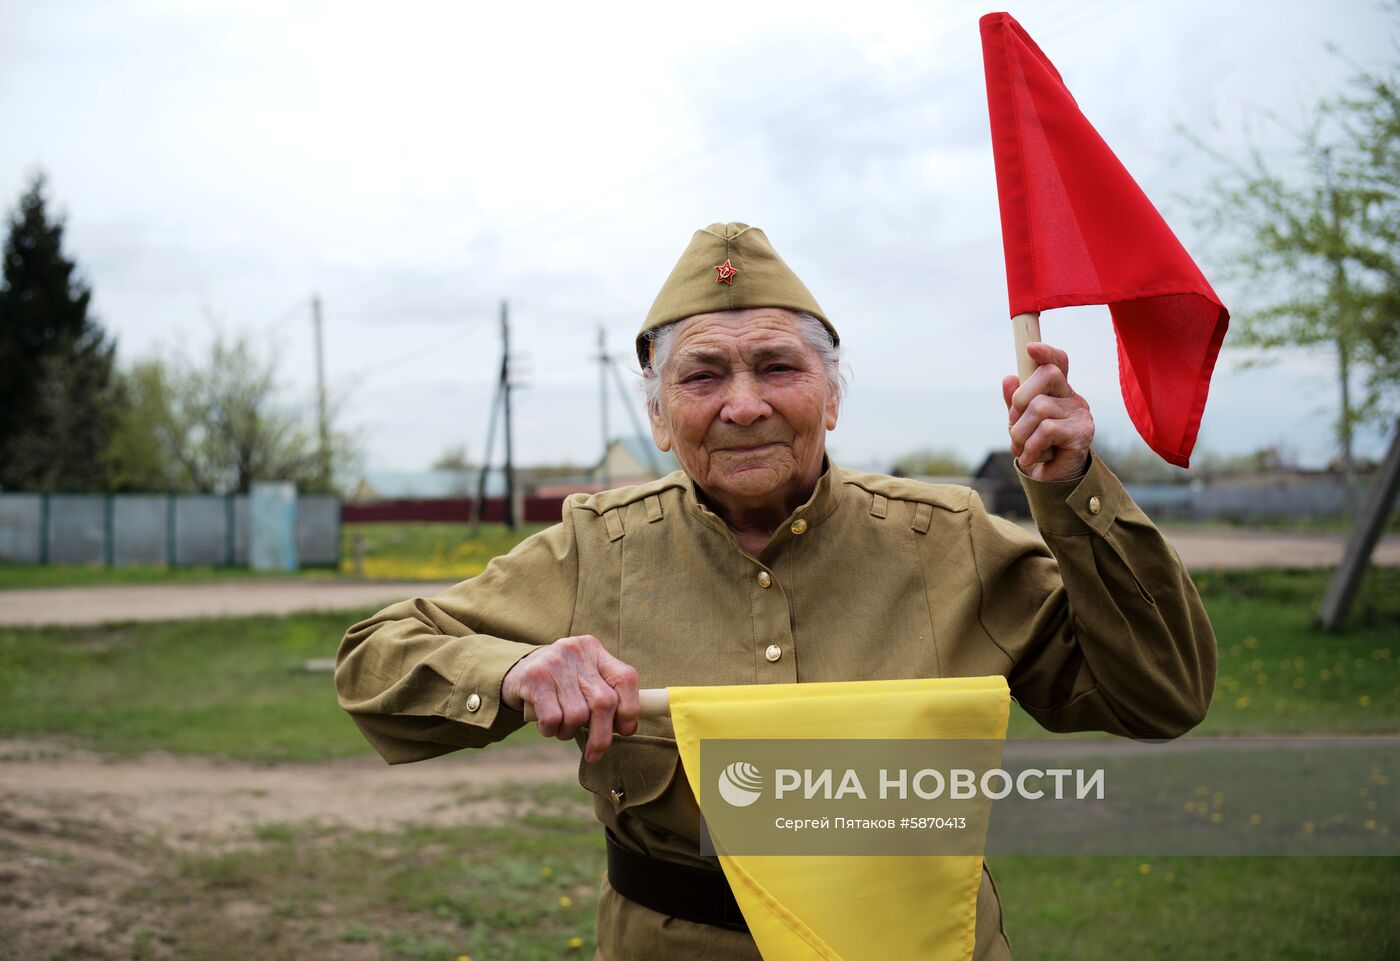 Ветеран Великой Отечественной войны Мария Лиманская